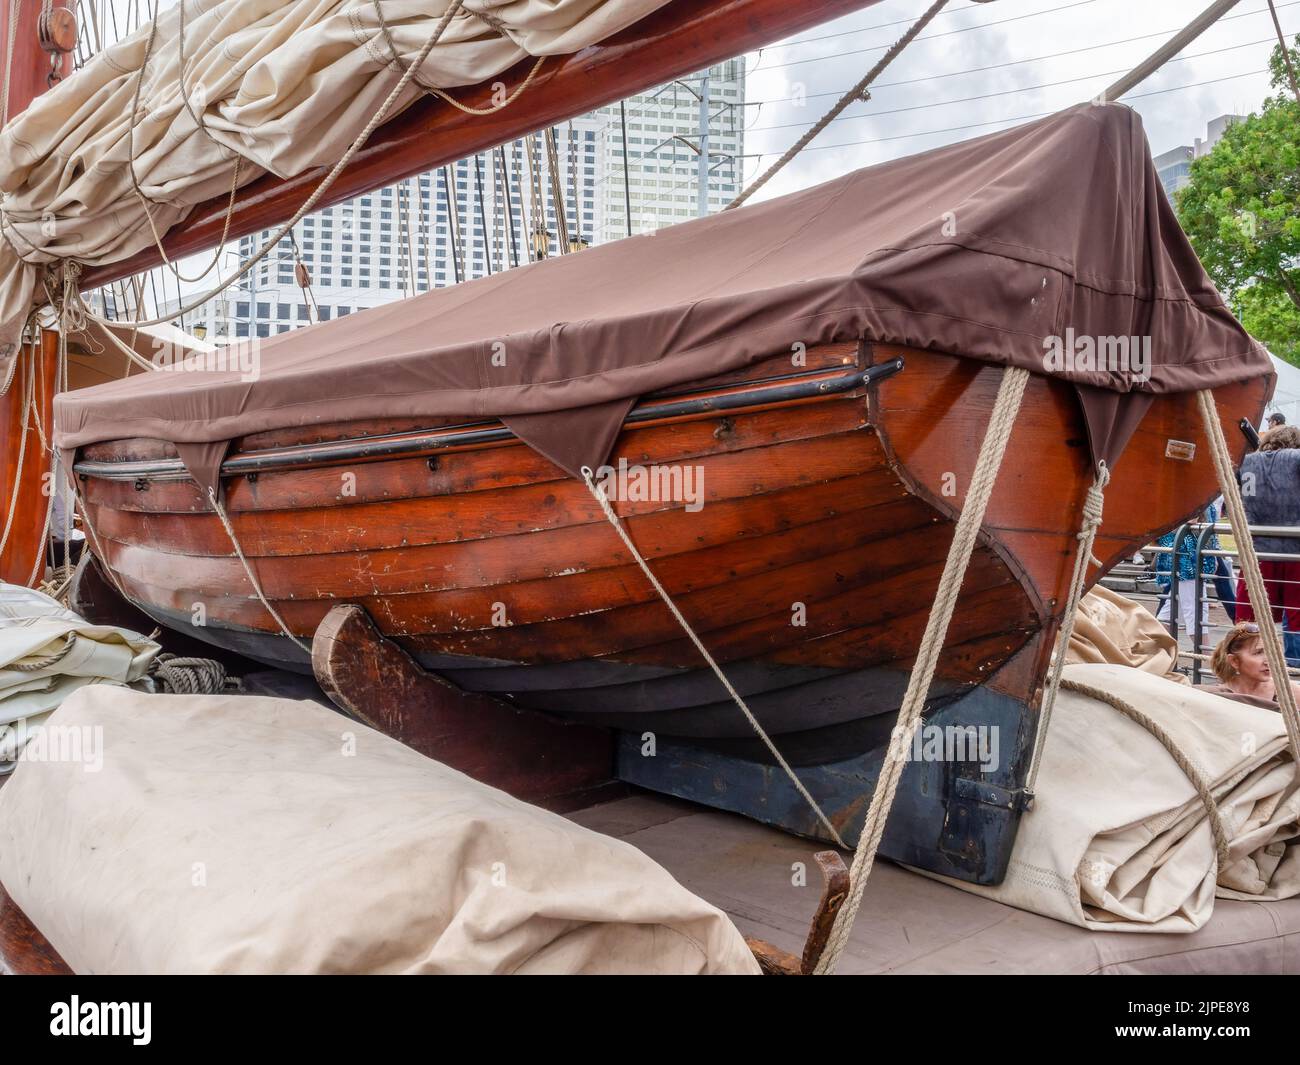 NEW ORLEANS, LA, USA - 21. APRIL 2018: Ein hölzernes Lebensboot auf einem historischen Segelschiff, das zur Dreihundertjahrfeier in New Orleans angedockt ist Stockfoto